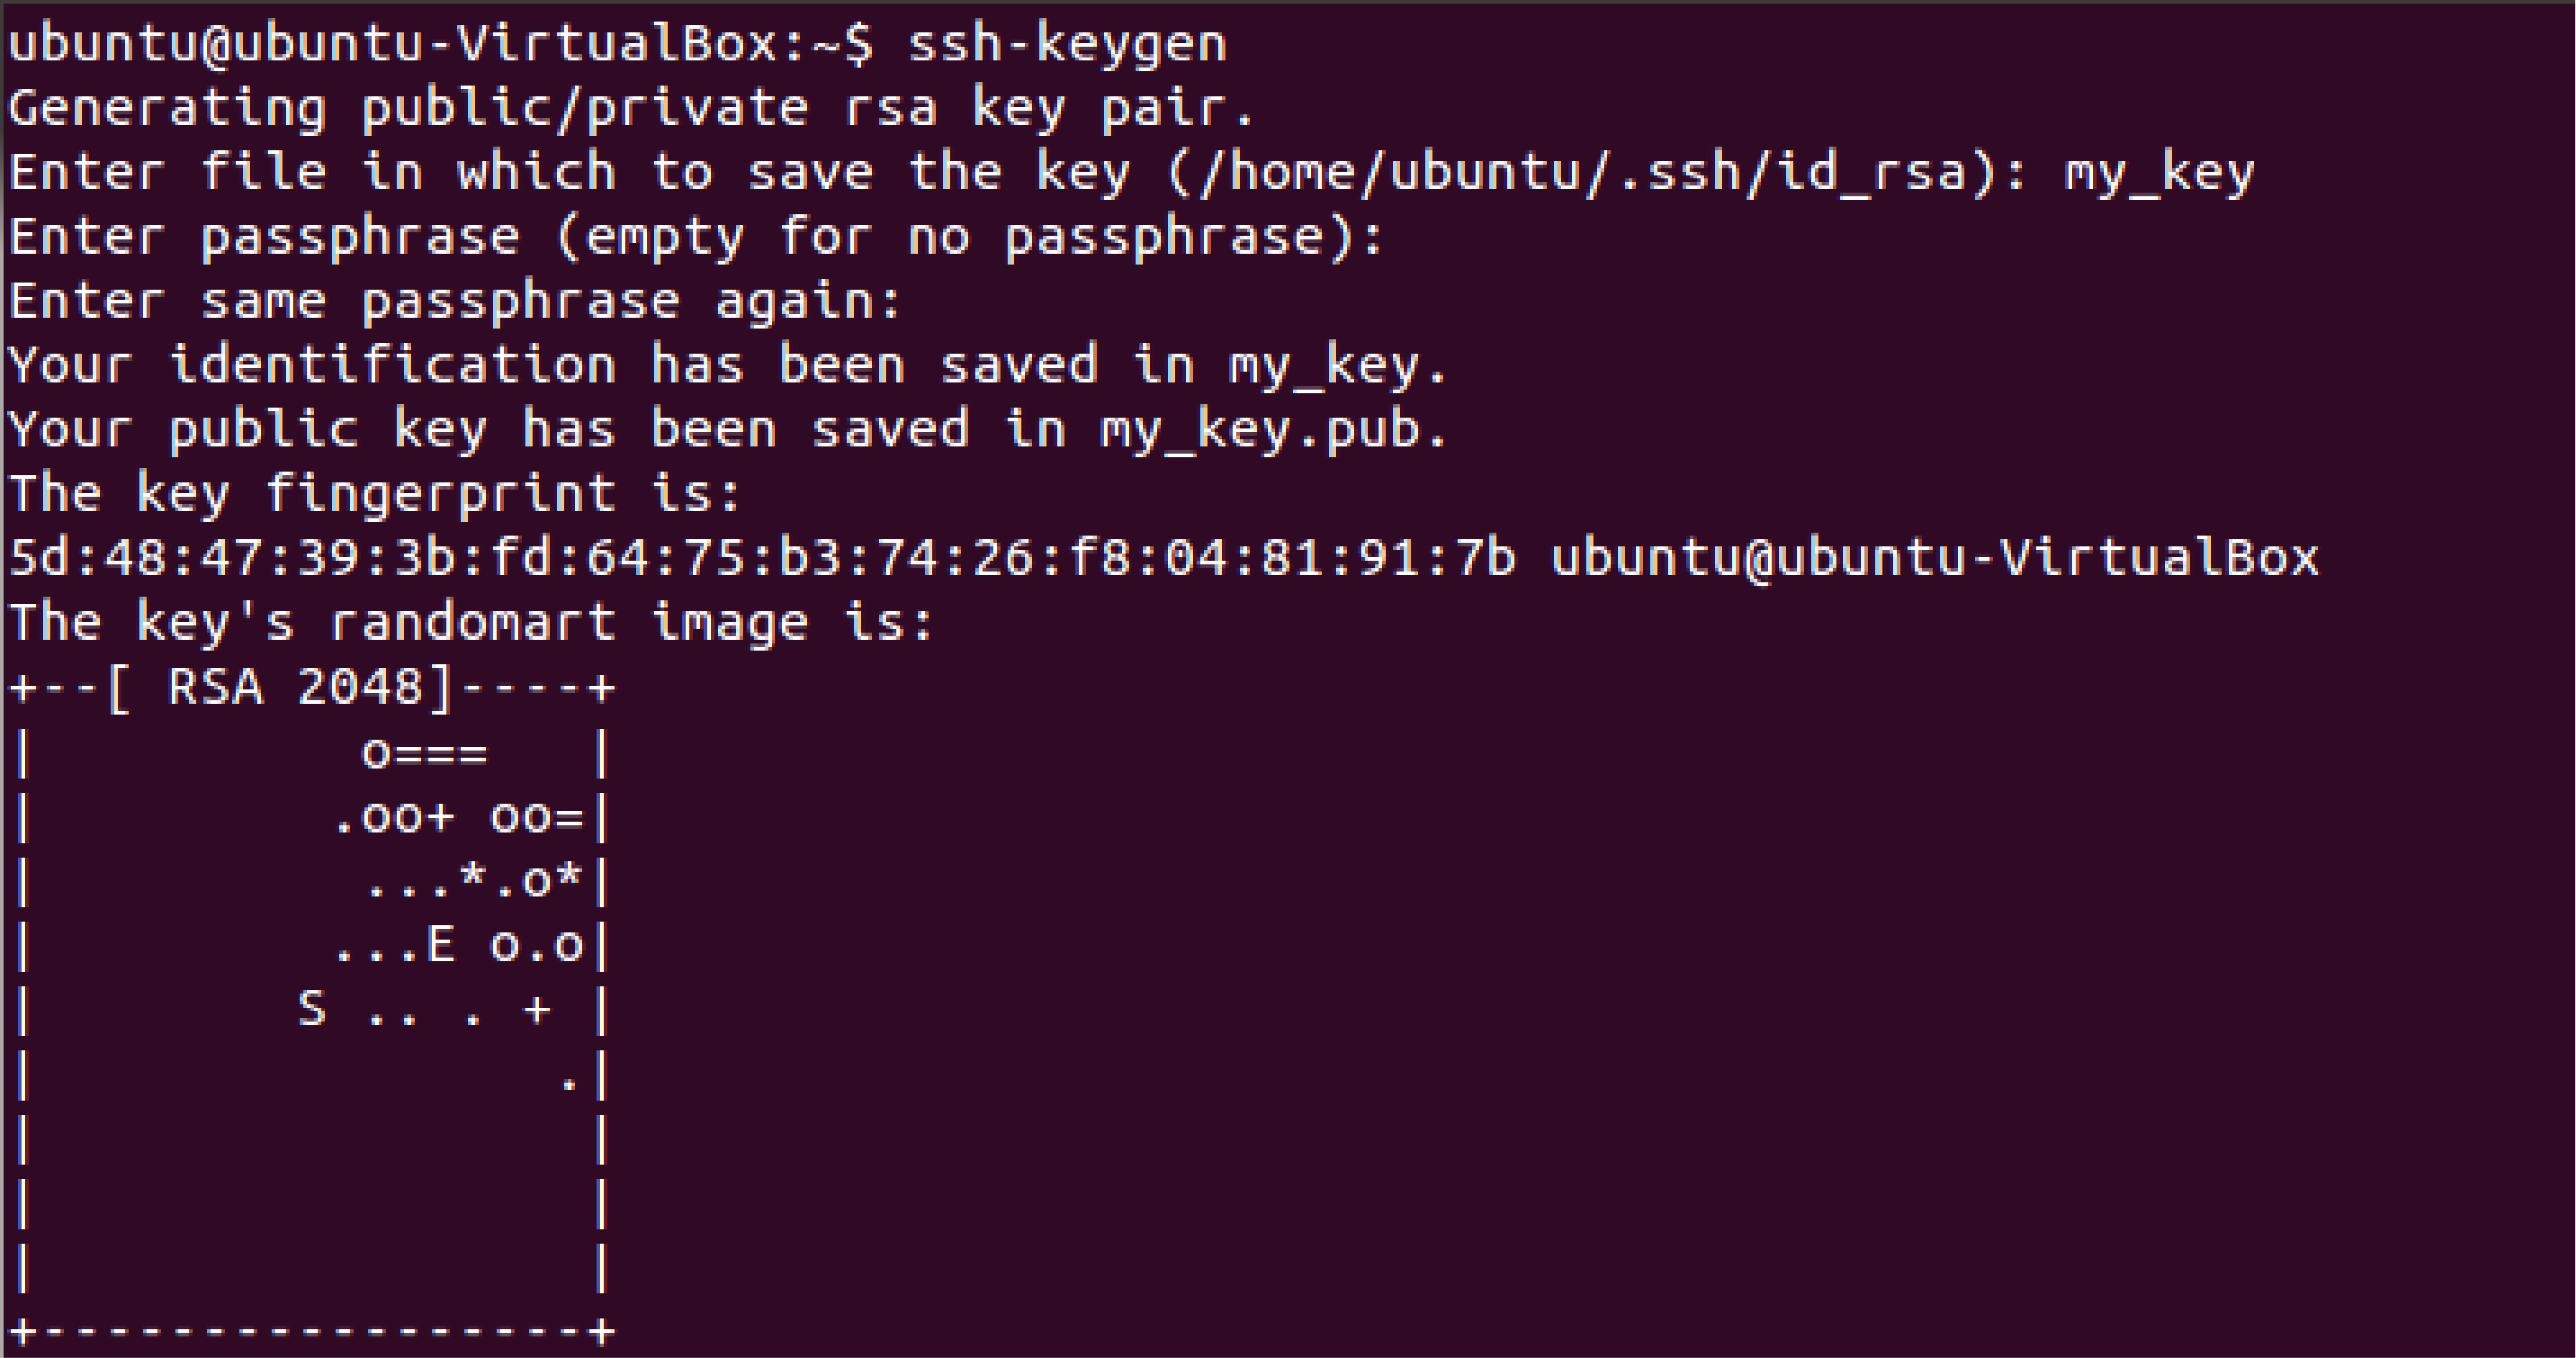 Generating SSH keys for multiple OS